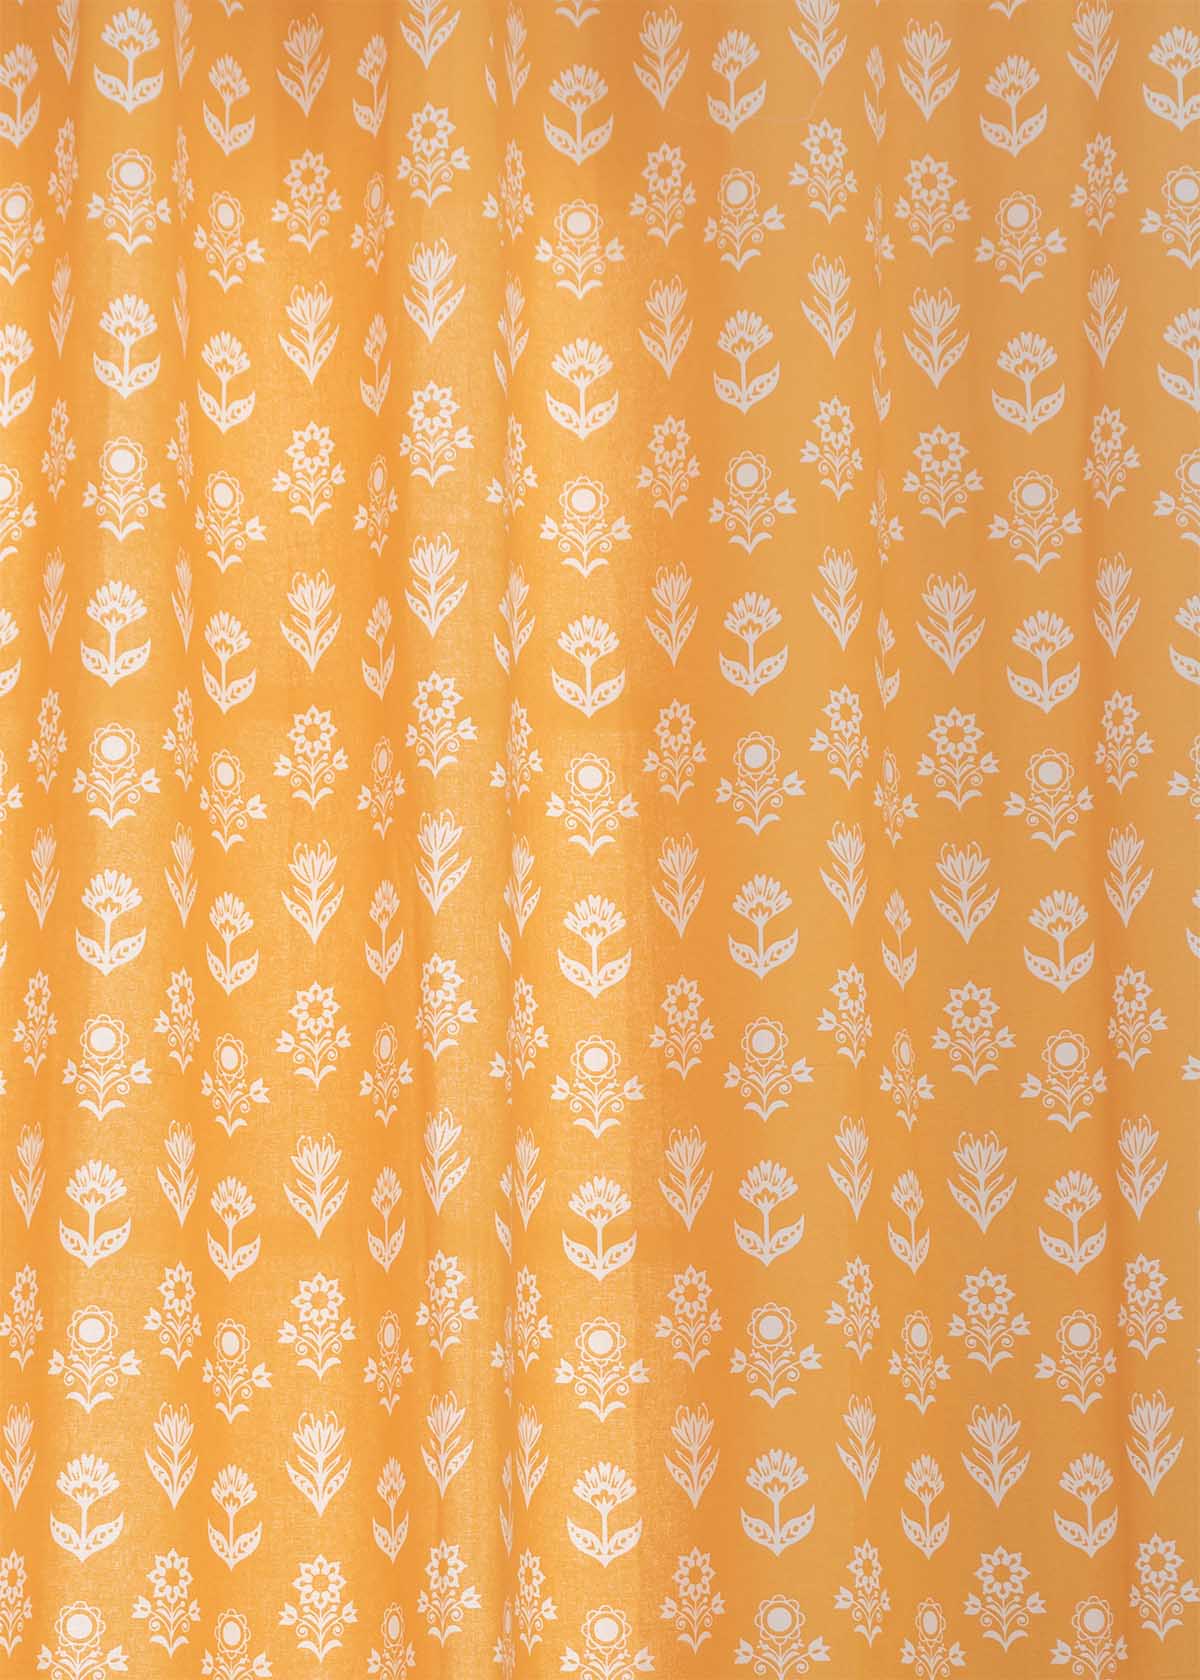 Dahlia Printed Cotton Curtain - Mustard - Single